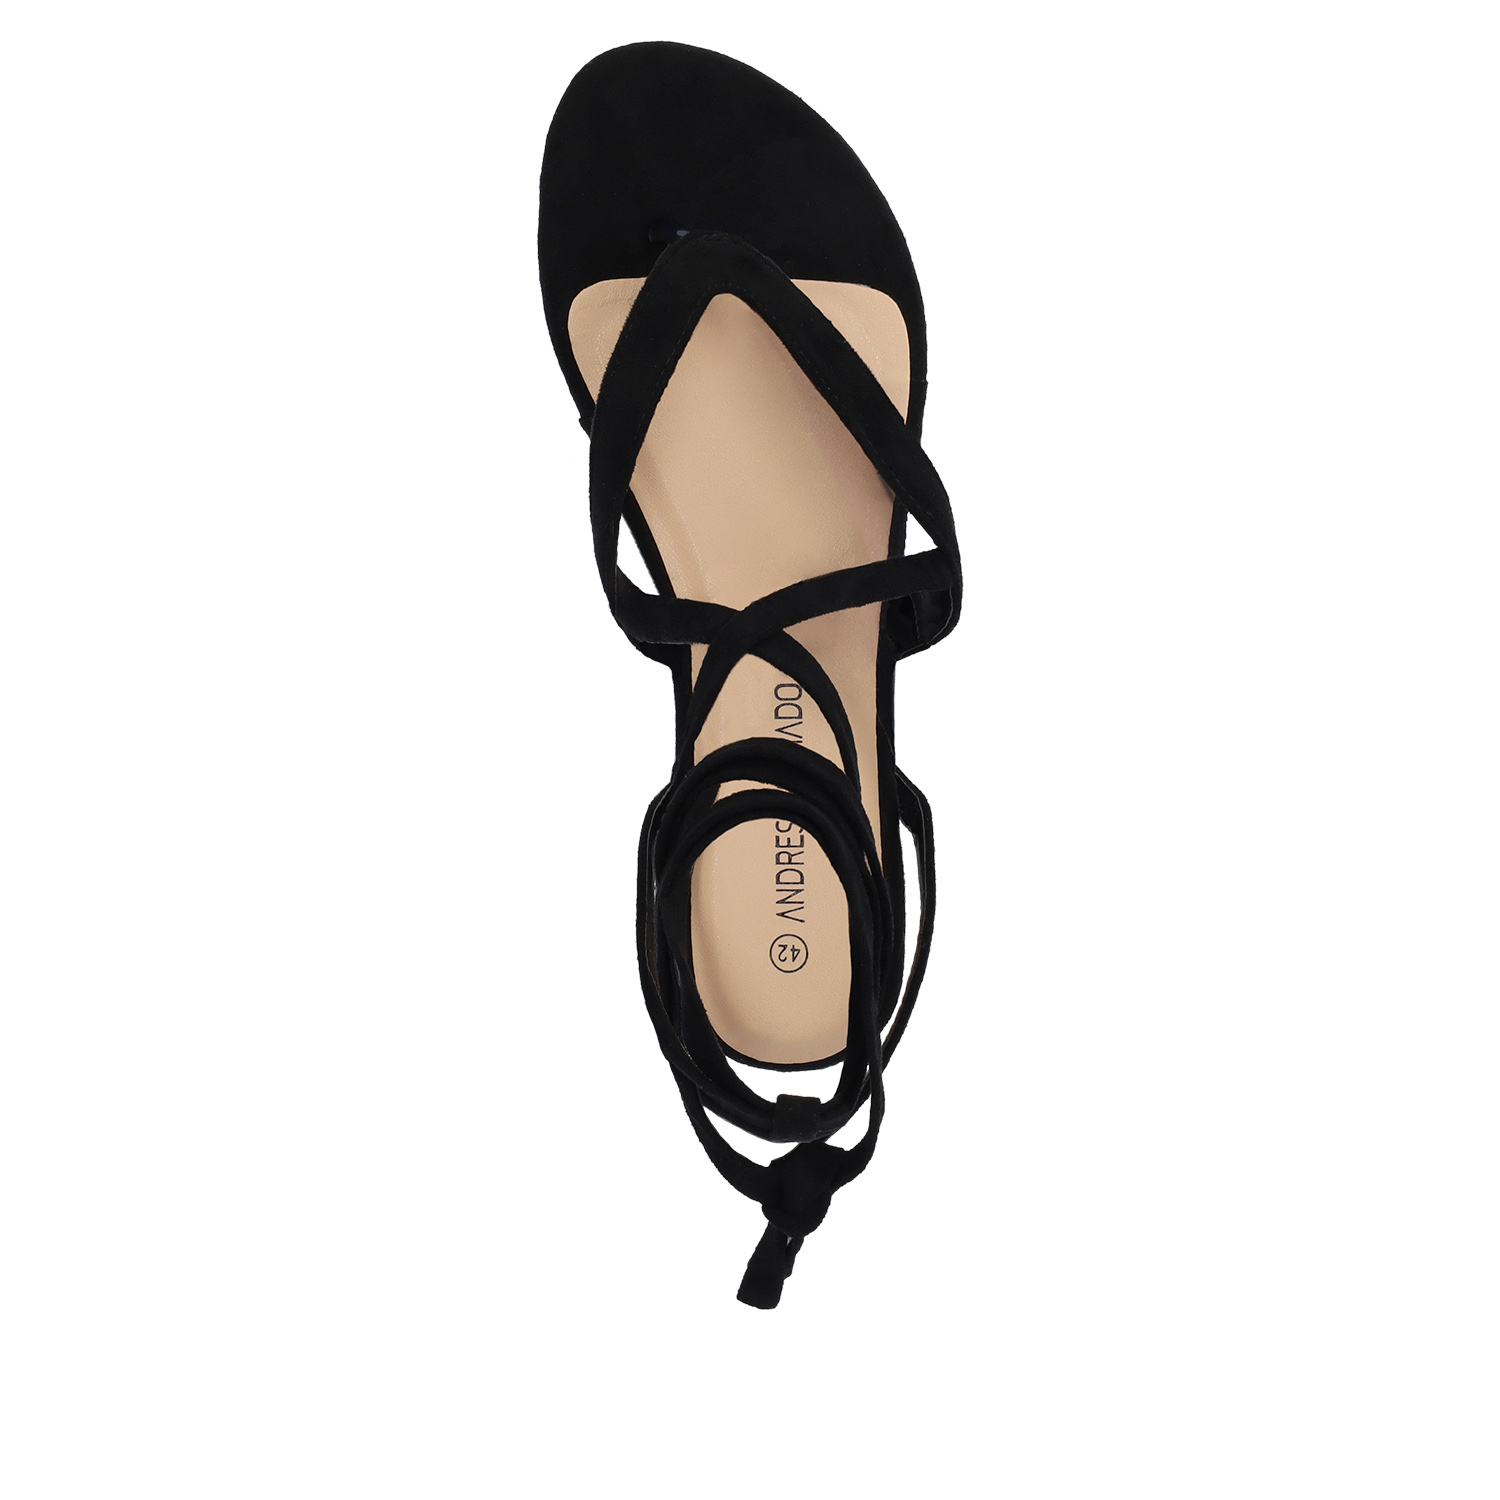 Black faux suede flat sandals 